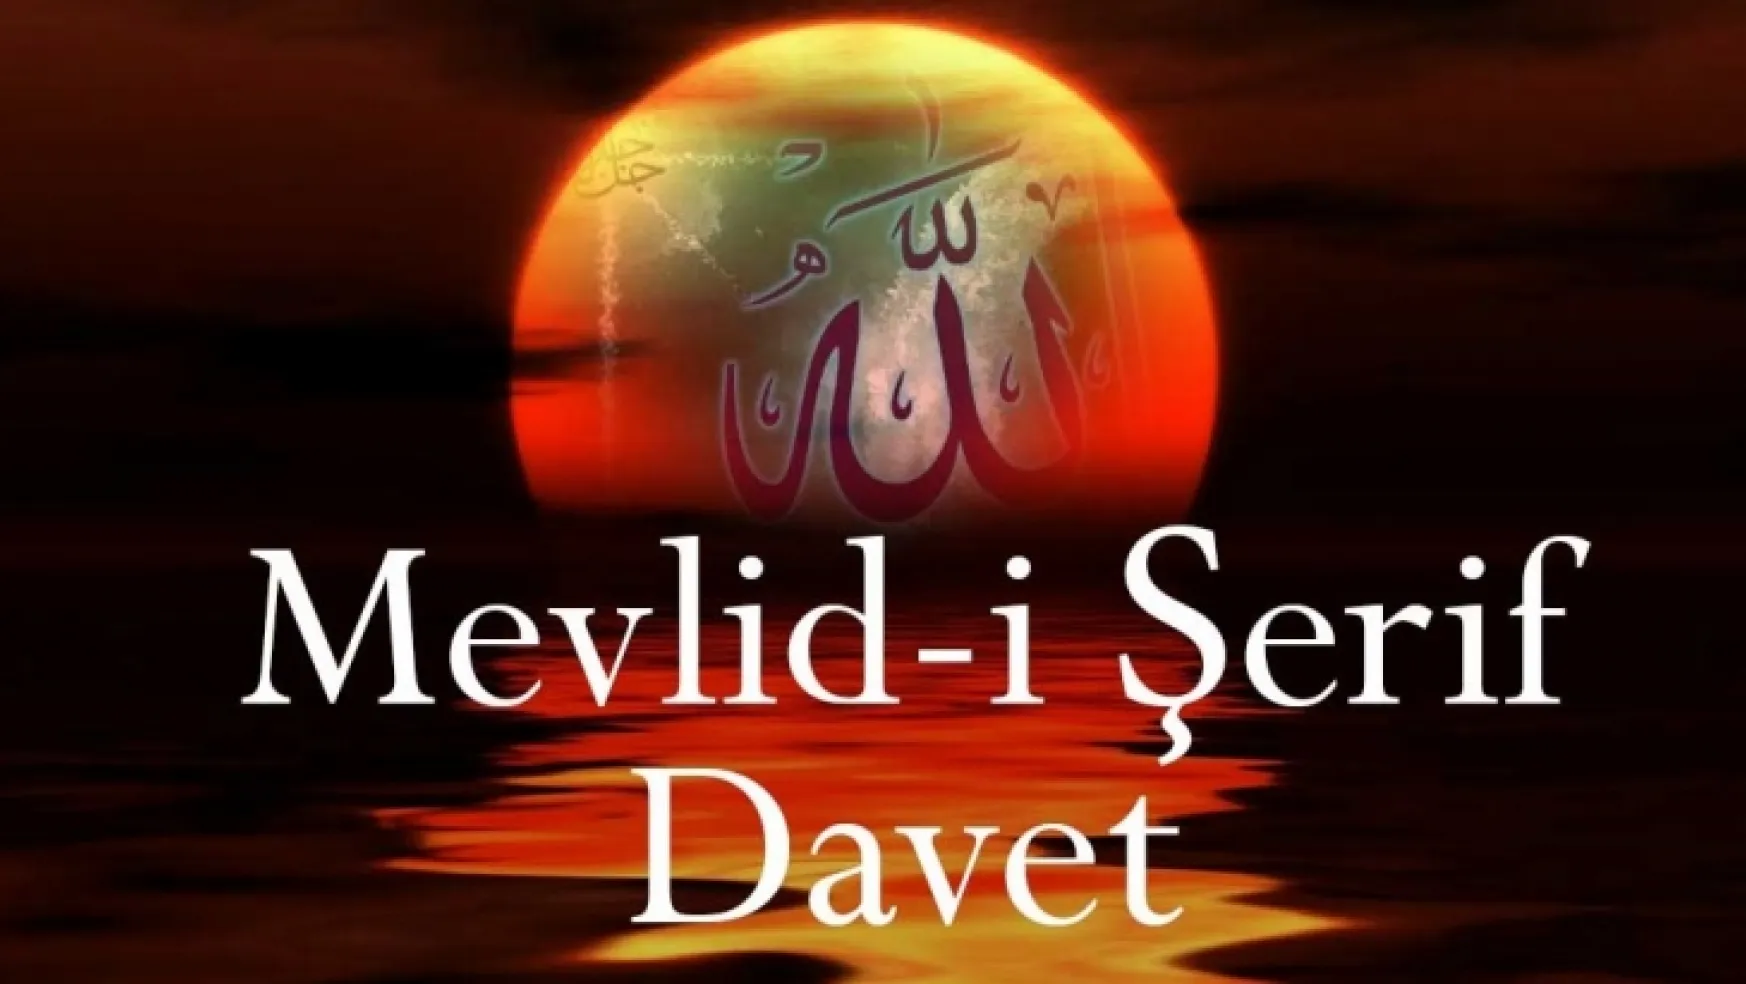 MEVLİD-İ ŞERİF'E DAVET